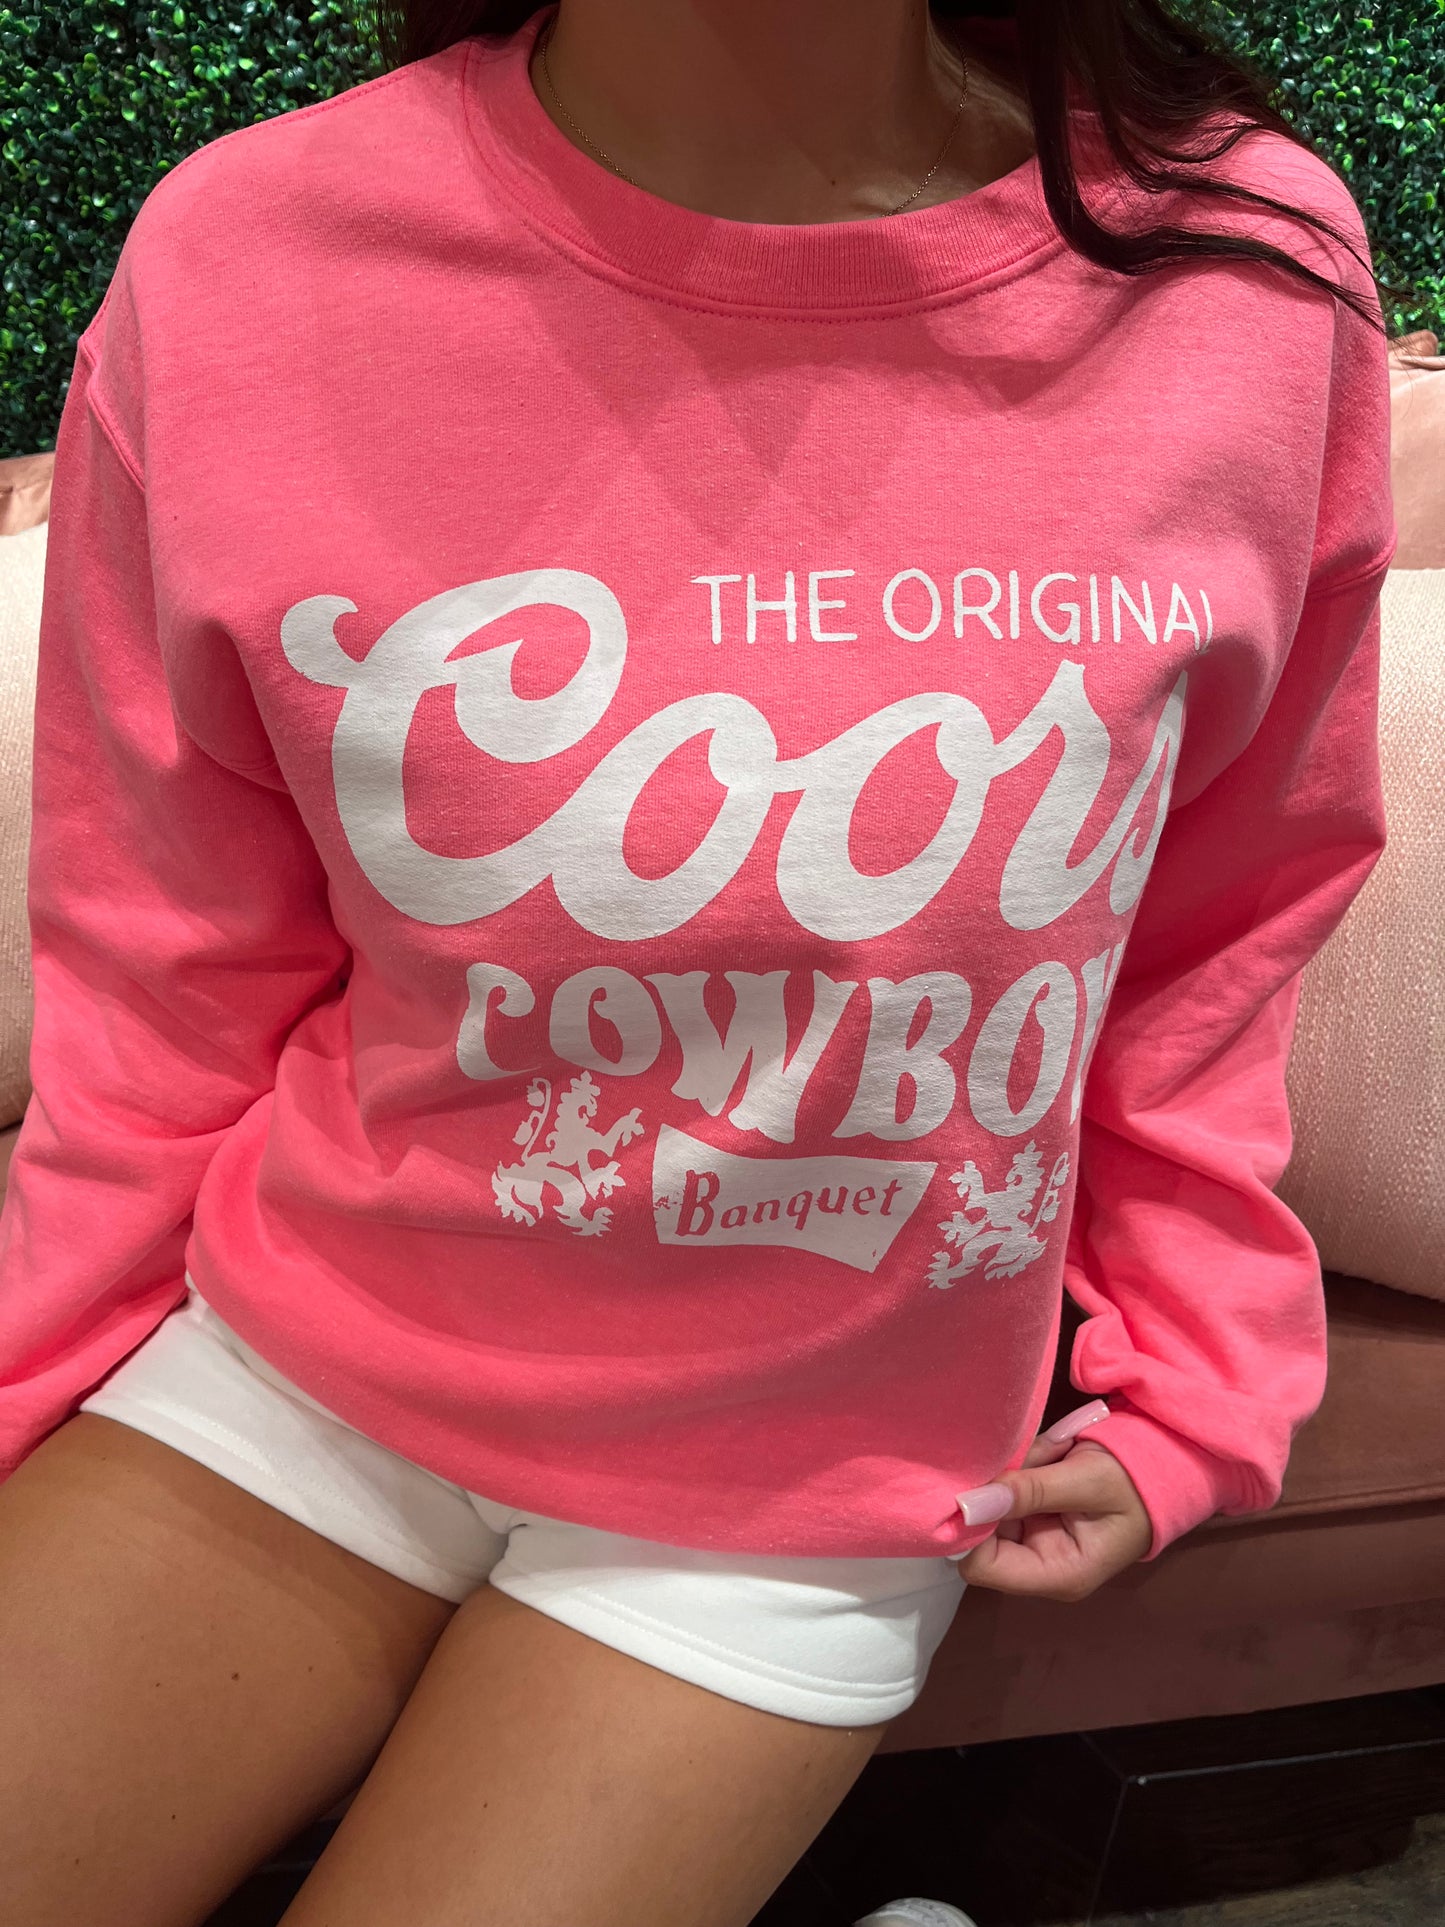 Pink Coors Sweatshirt